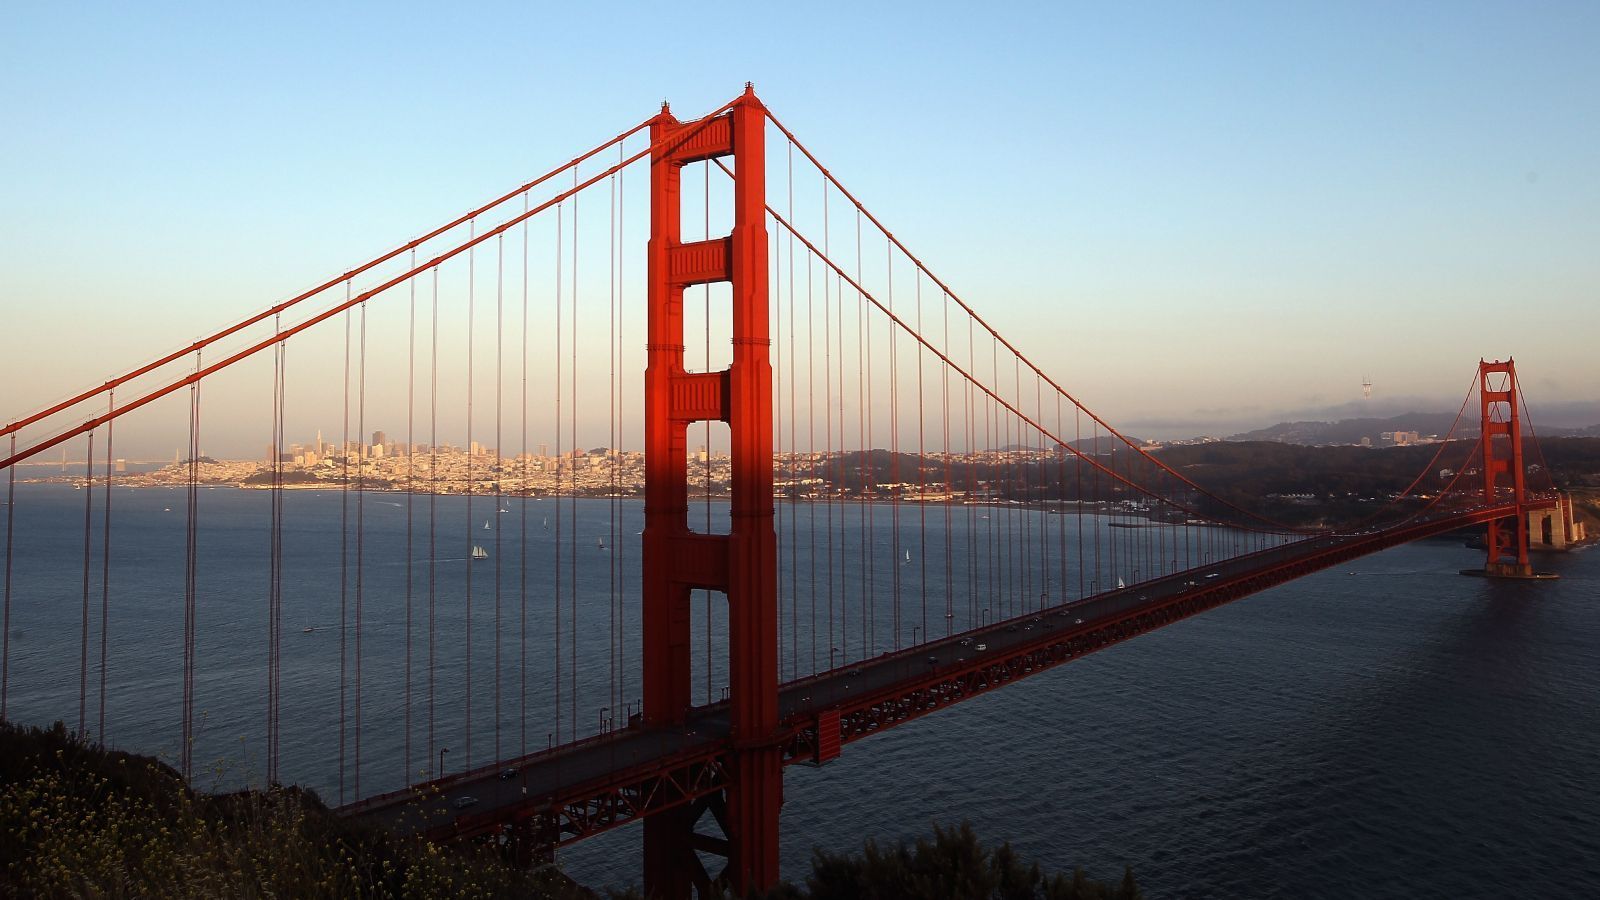 
                <strong>Wird die Golden Gate Bridge zu sehen sein? </strong><br>
                Die Golden Gate Bridge ist eines der Wahrzeichen Kaliforniens und der ganze Stolz von San Francisco. Deshalb bieten Buchmacher im Vorfeld des Super Bowls die Möglichkeit darauf zu wetten, ob die legendäre Brücke im Rahmen der Übertragung des Super Bowls zu sehen sein wird. Wer auf "Ja" setzt, würde 300 Dollar bei 100 Dollar Einsatz gewinnen. Die Quote für ein "Nein" liegt bei -500, also müssen Wettende 500 Dollar setzen, um durch ihre Antwort bei Korrektheit 100 Dollar Nettogewinn zu erzielen.
              